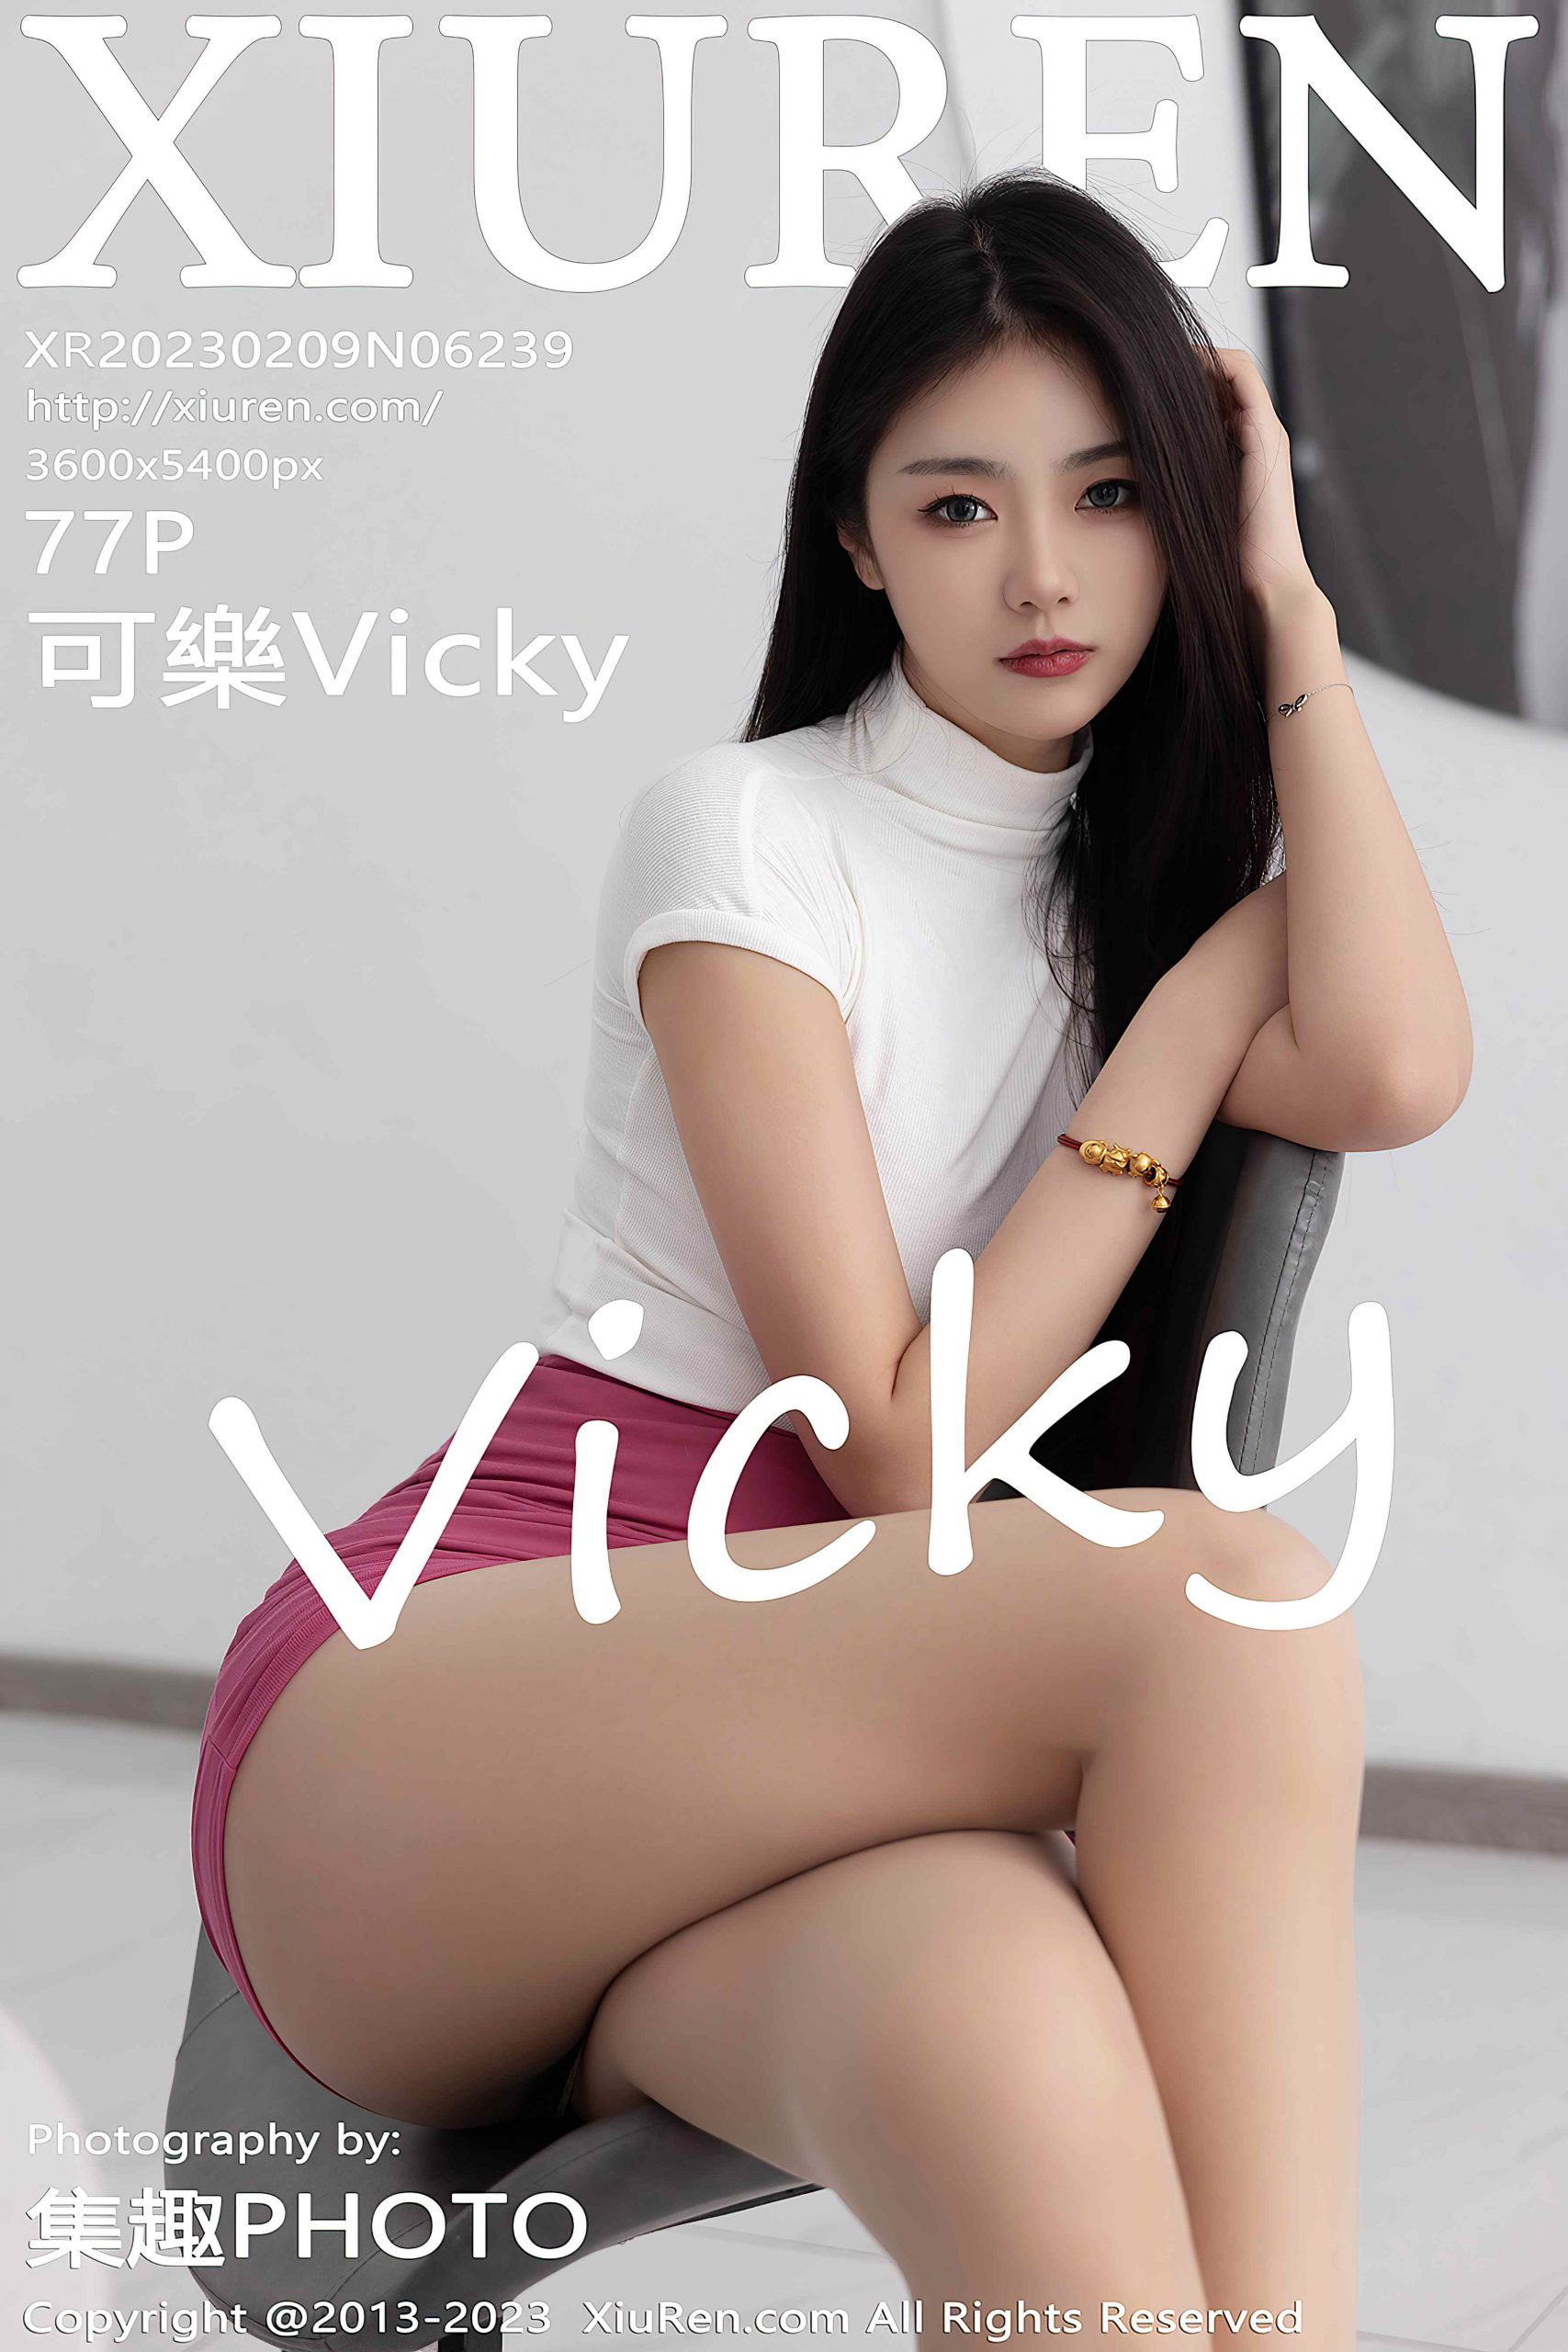 [XiuRen秀人网] 2023.02.09 No.6239 可樂Vicky 短裙美腿[77P/649M]